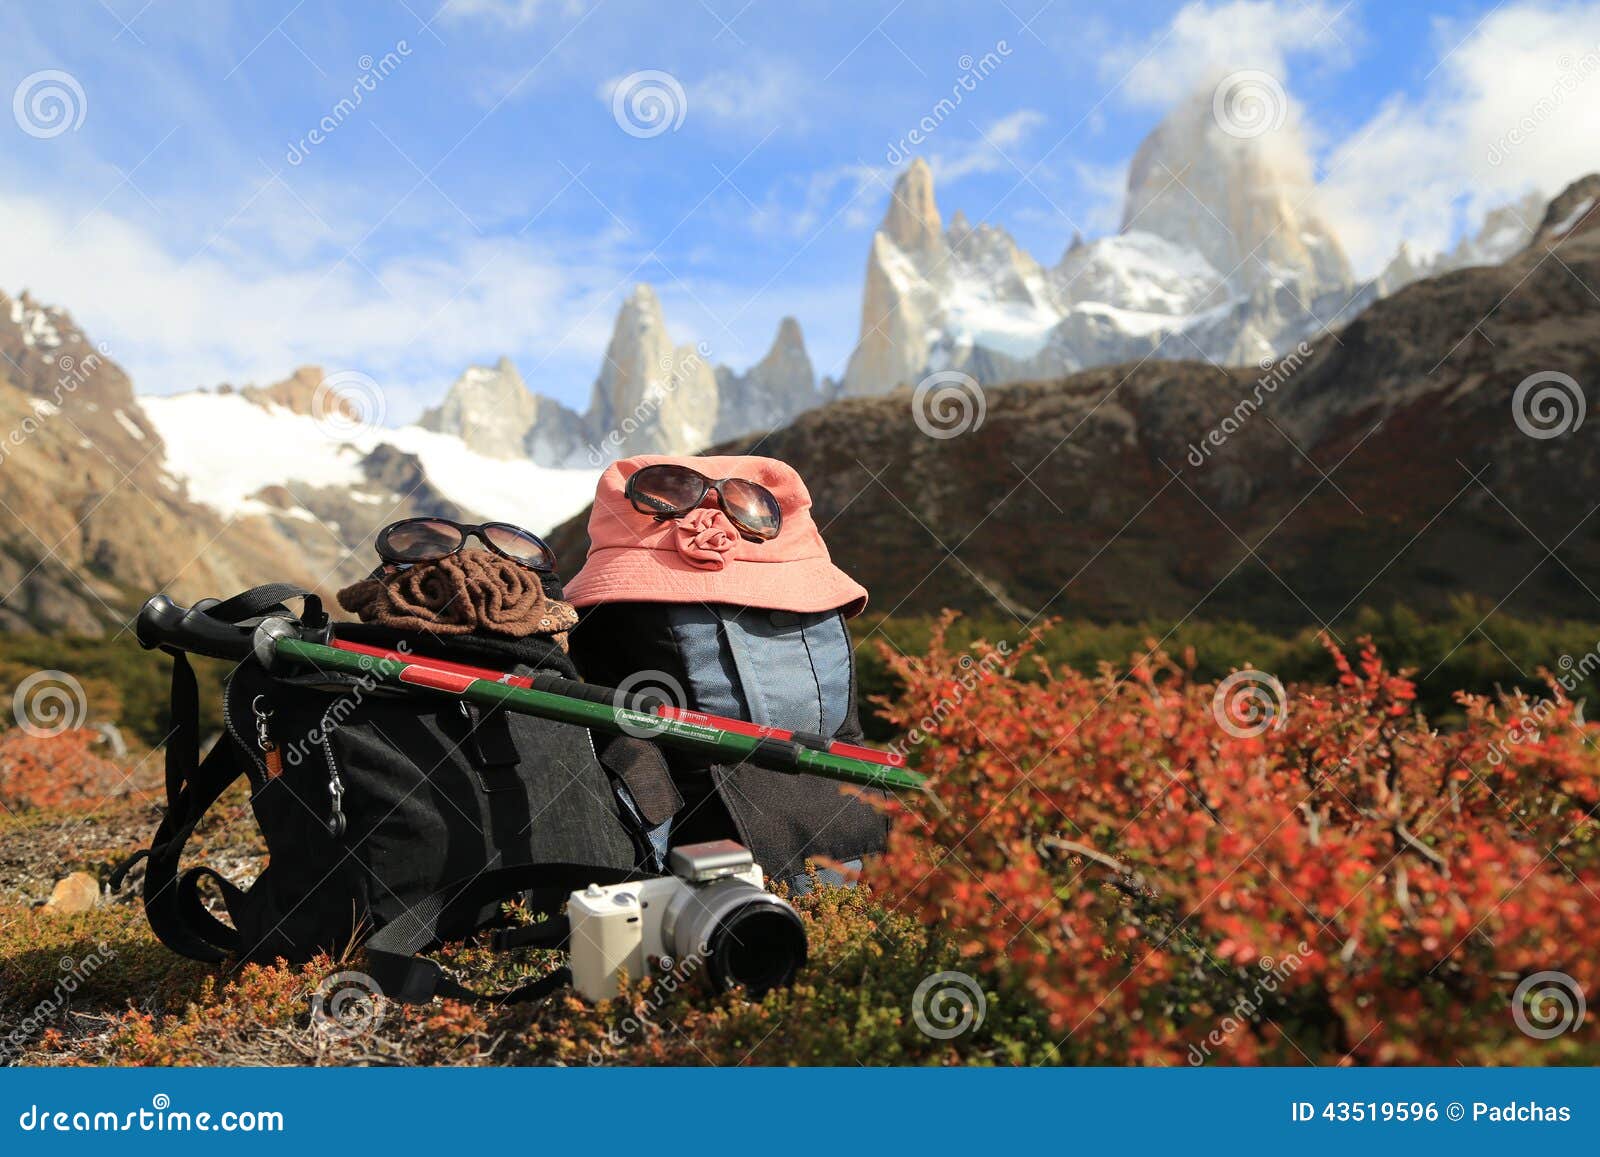 trekking to mt fitz roy in el chalten, argentina